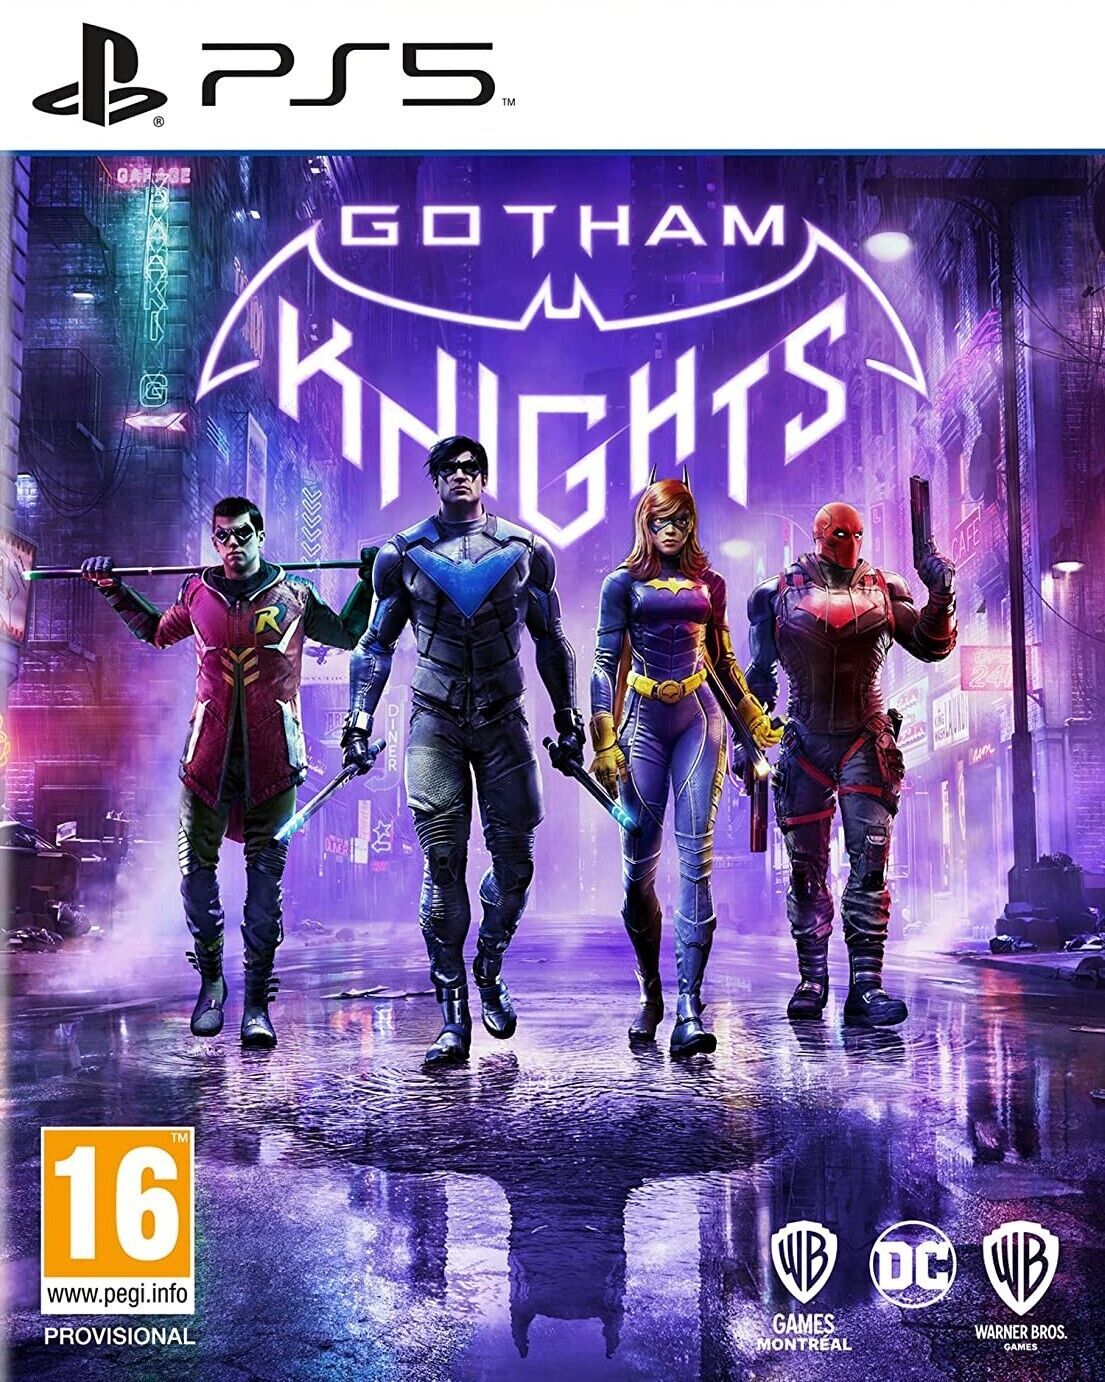 Gotham Knights - Videojuego (PS5, PC y Xbox Series X/S) - Vandal